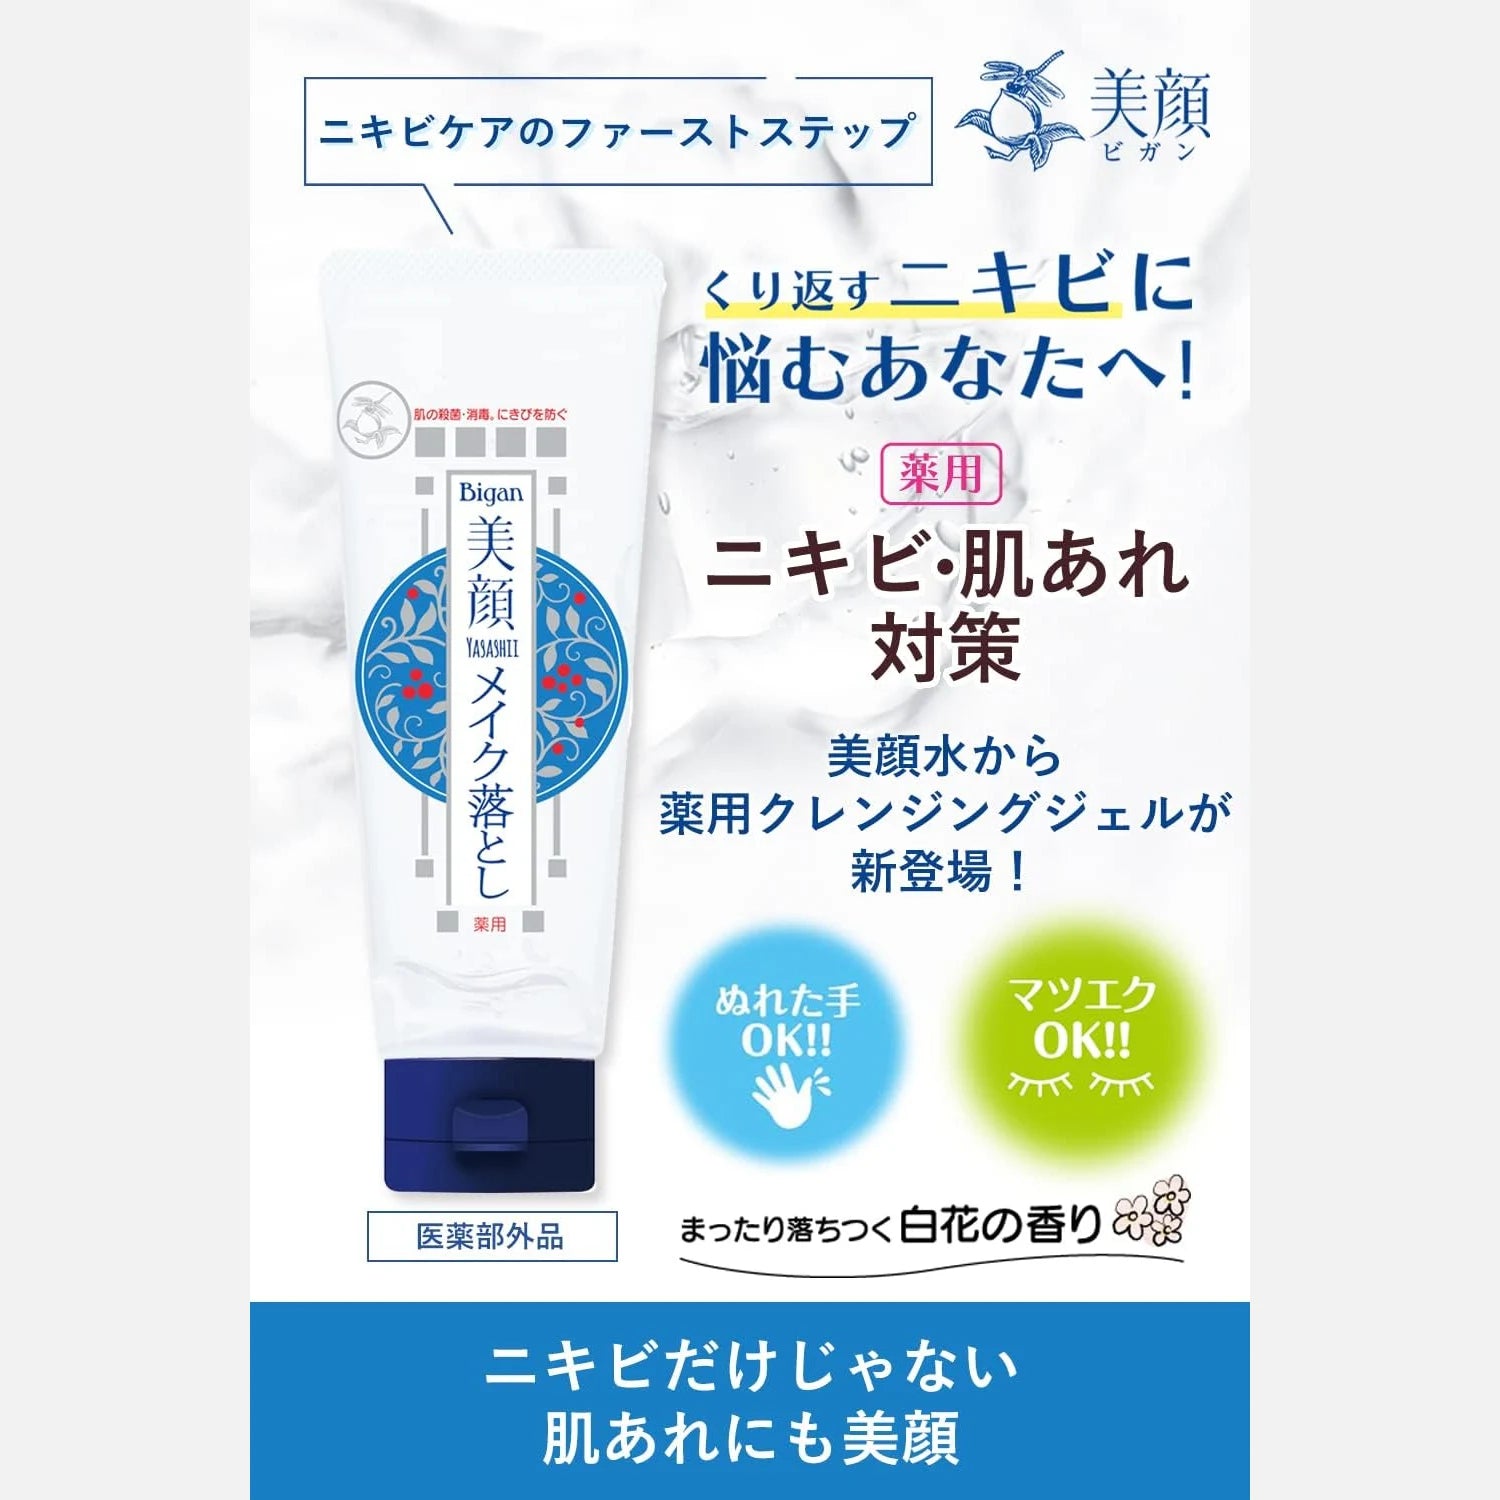 Meishoku Bigansui Acne Care Cleansing Gel 150g - Buy Me Japan